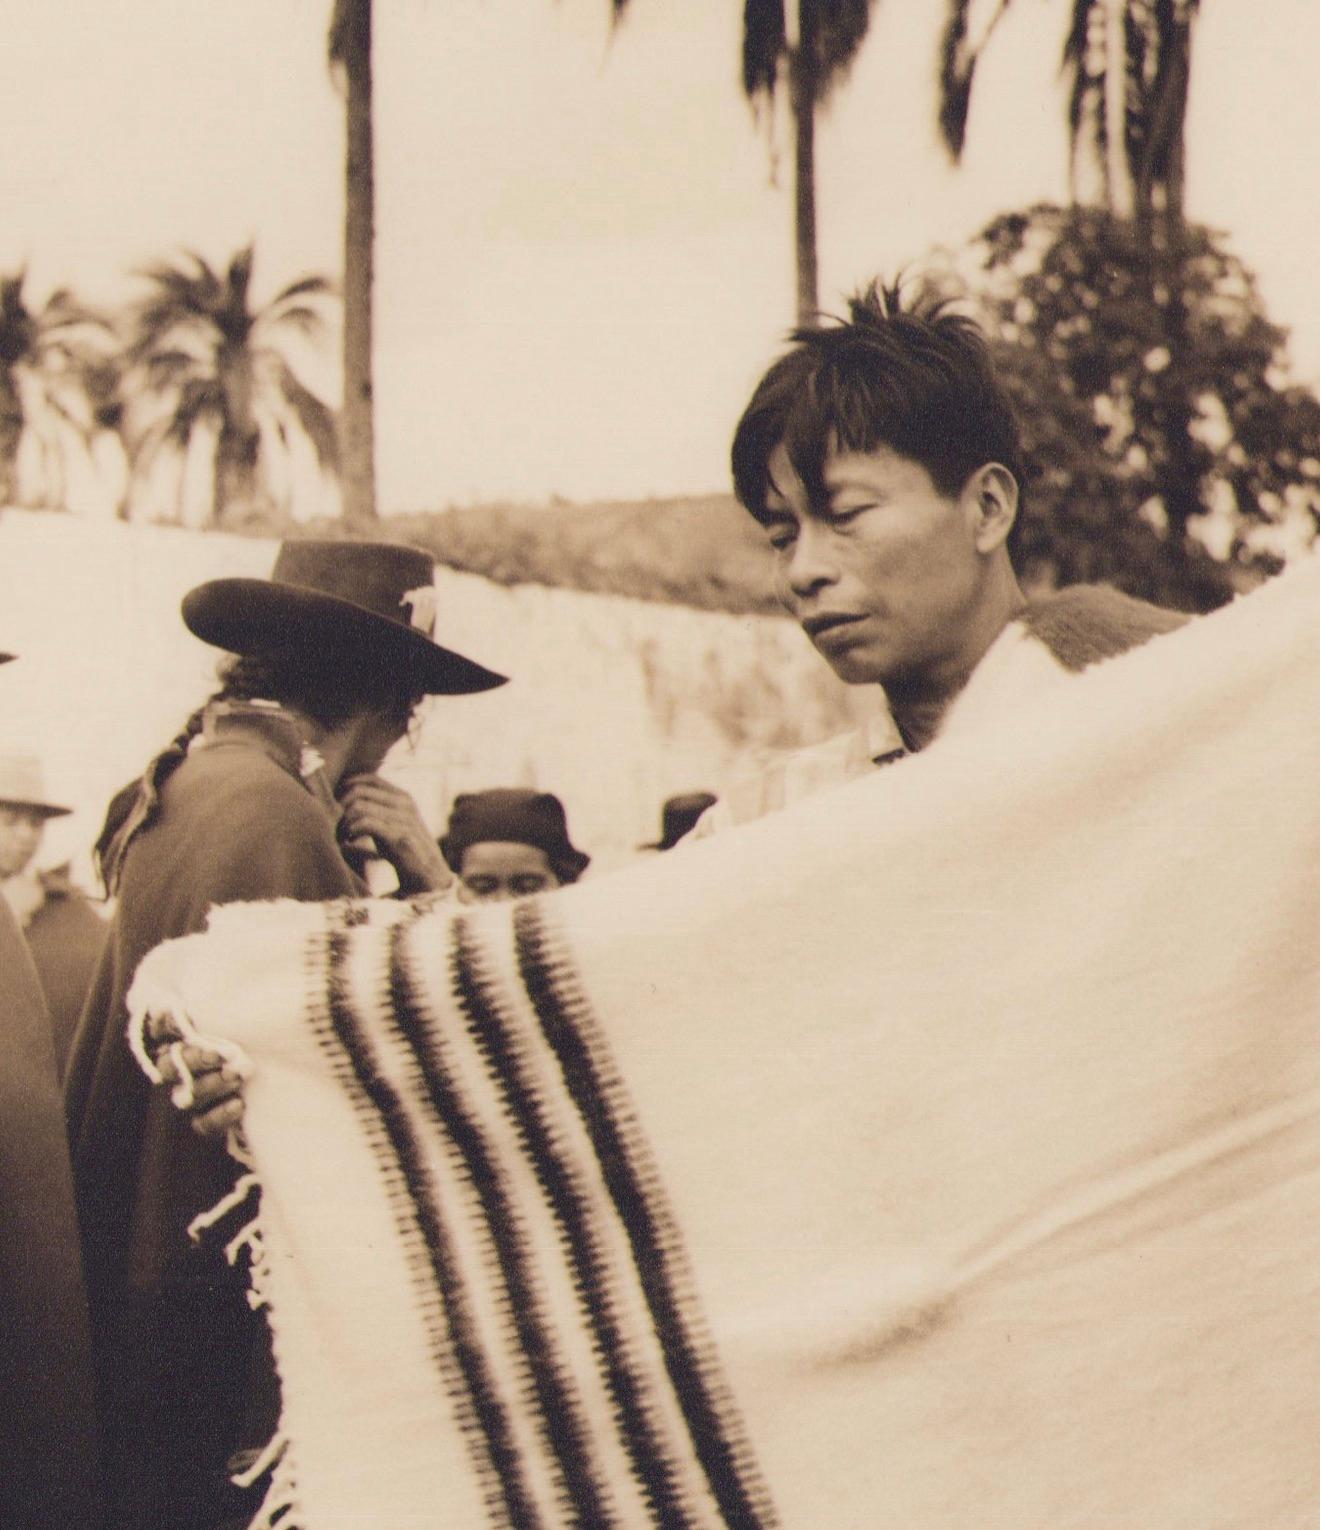 Équateur, marché, peuple, photographie en noir et blanc, années 1960, 17,4 x 21,5 cm - Photograph de Hanna Seidel